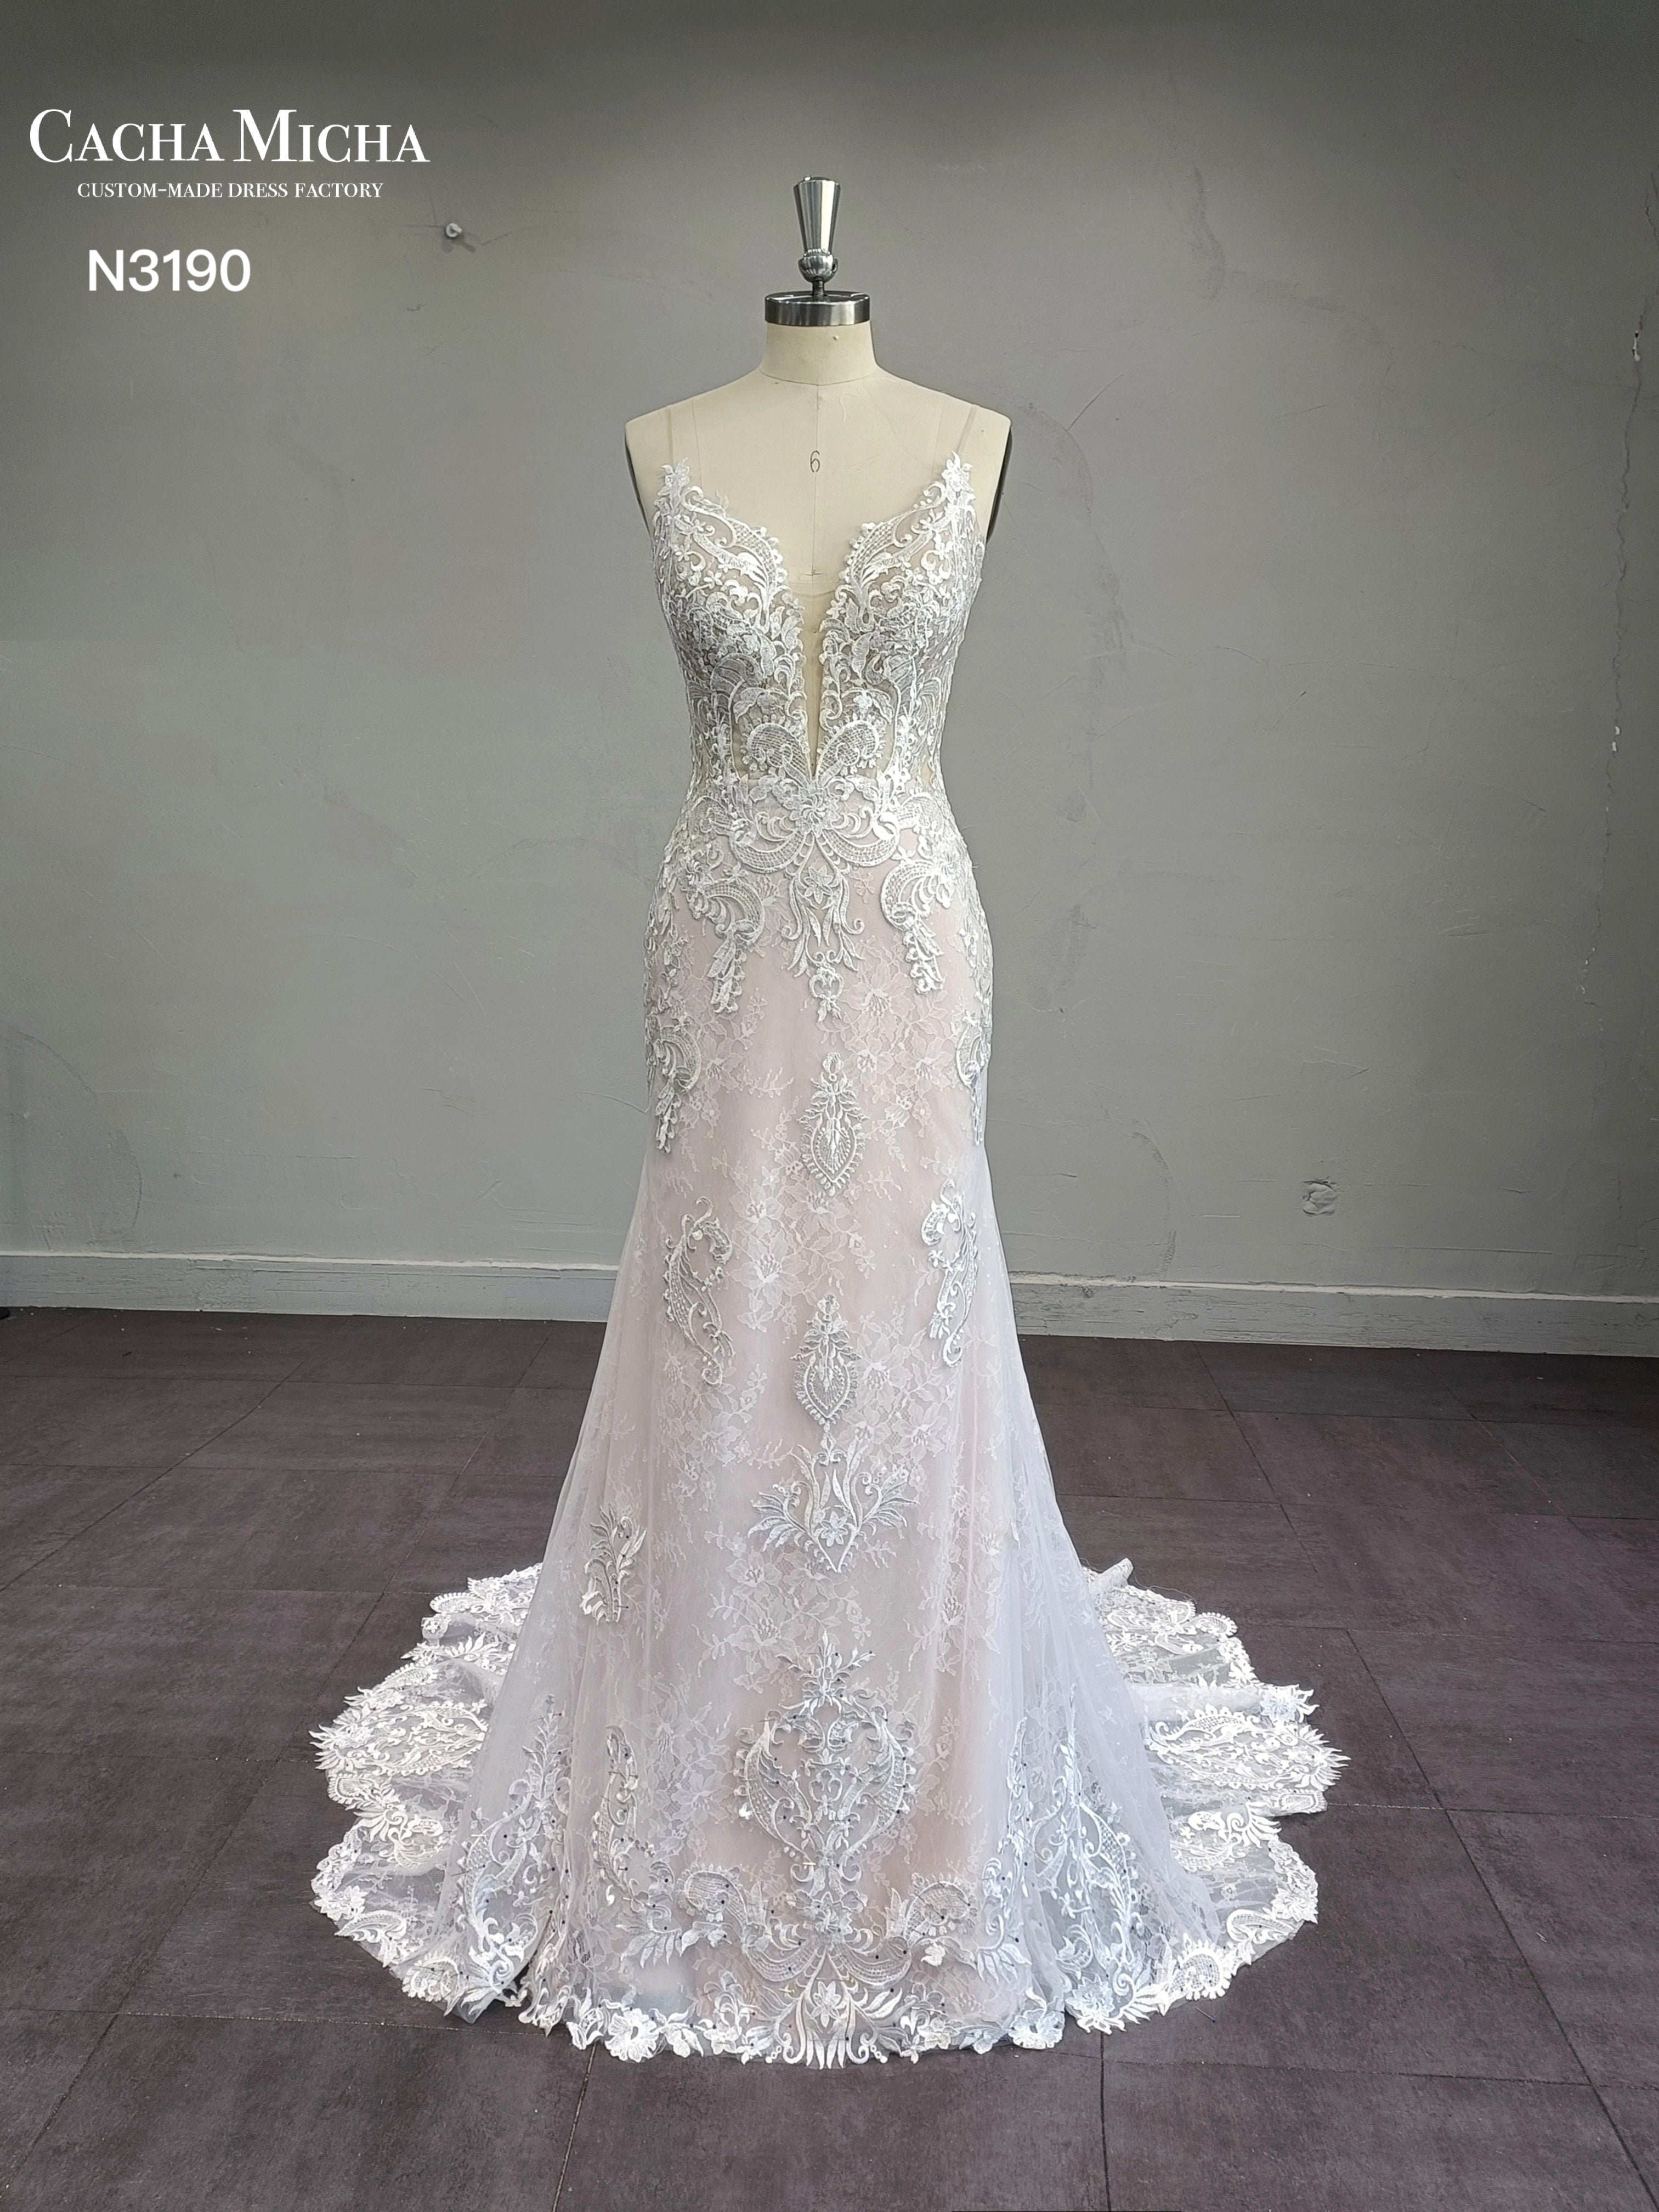 Blush Lining Lace Floral Train Mermaid Wedding Dress N3190